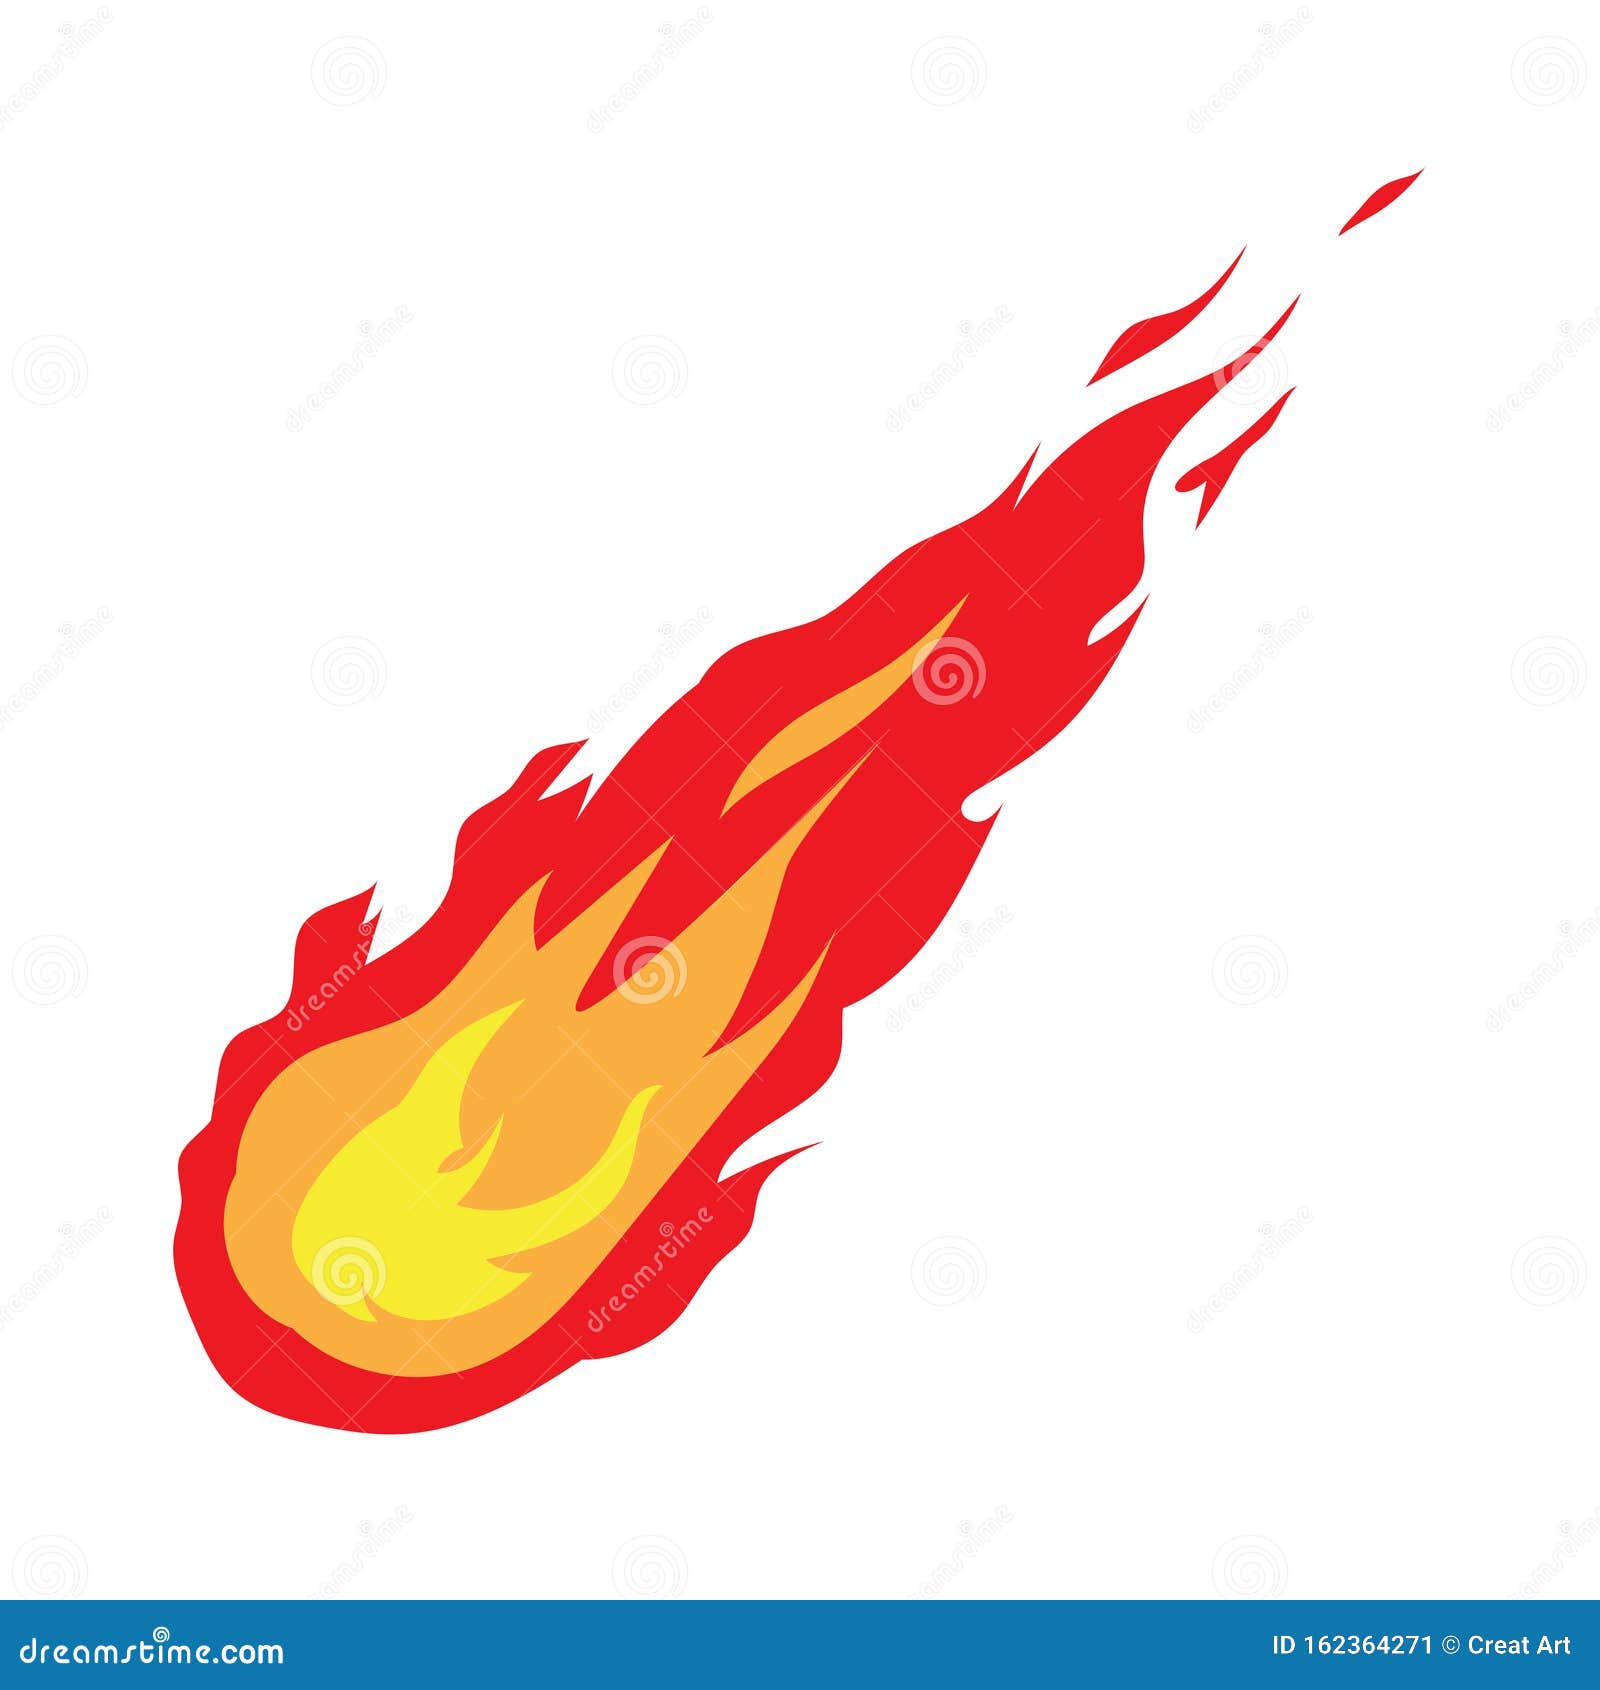 meteor  .flame logo icon